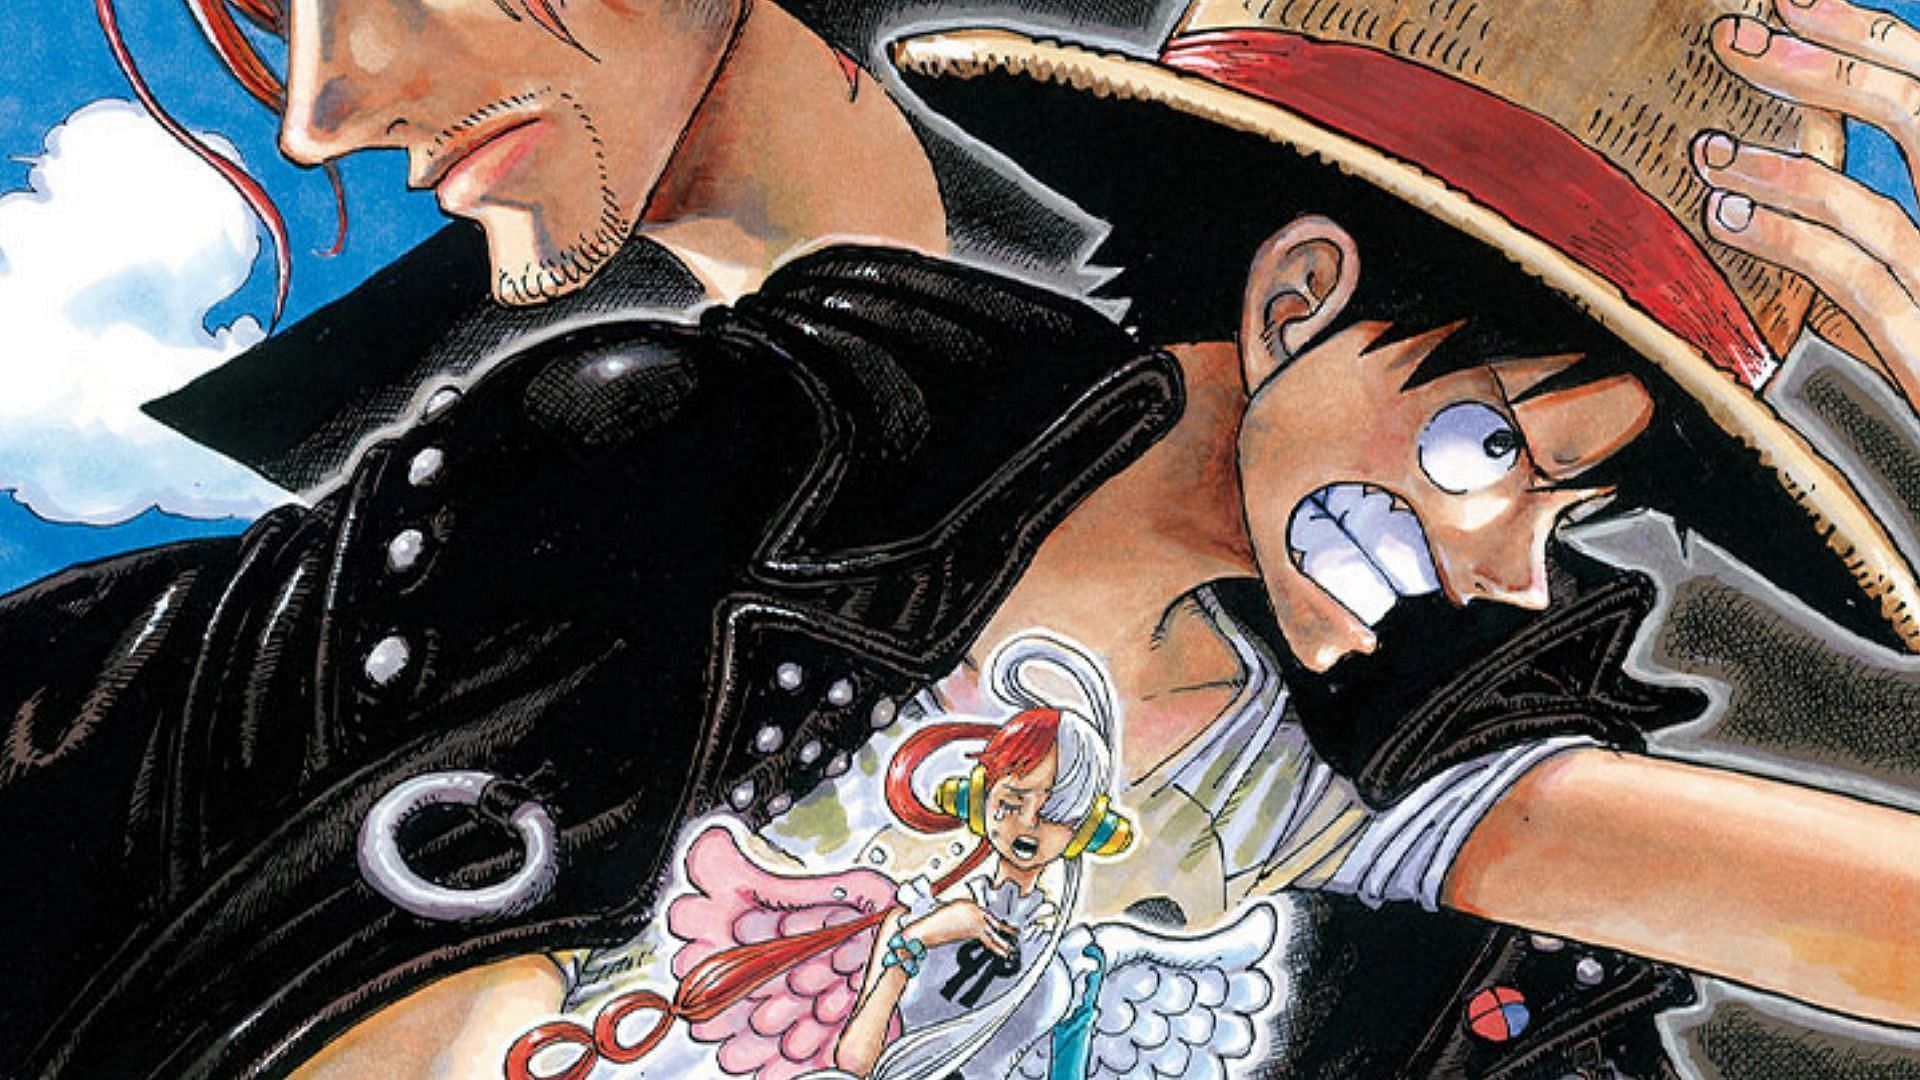 One Piece: Stampede Anime Film Celebrates 10 Billion Yen in